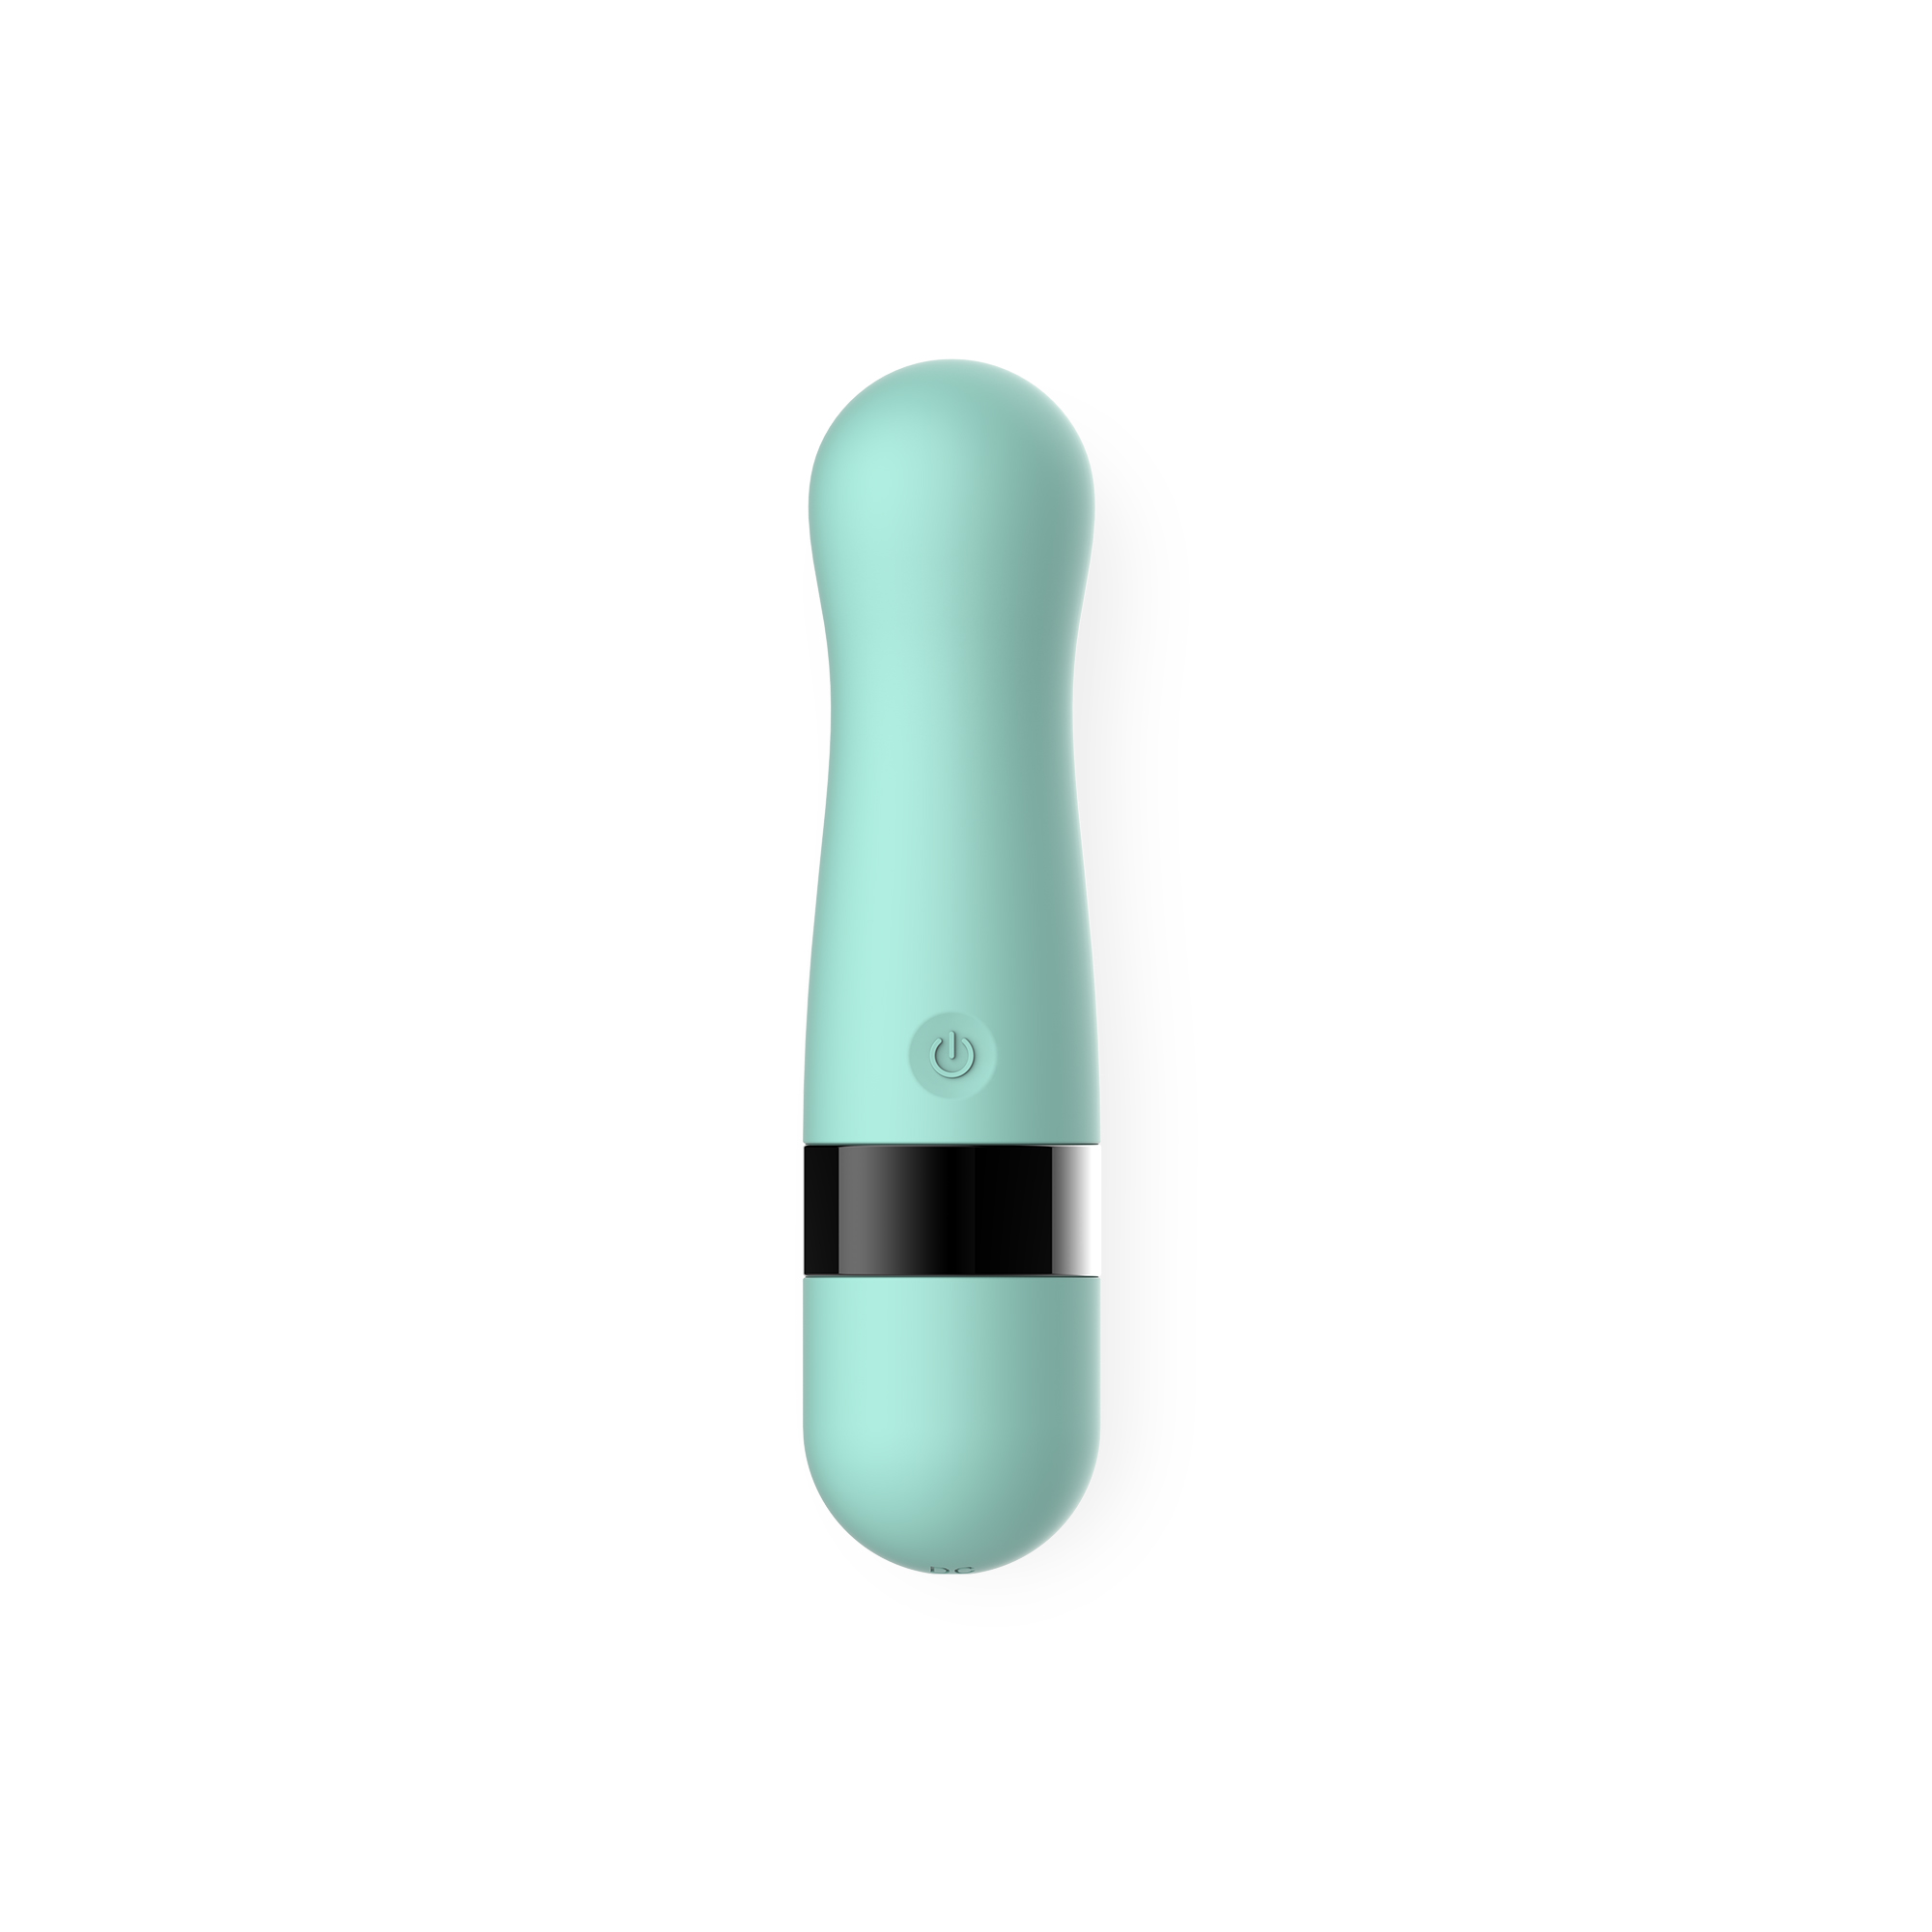 #MEMYLSELFANDI de la collection Euphorie est le vibrateur spécialement conçu pour stimuler votre clitoris.